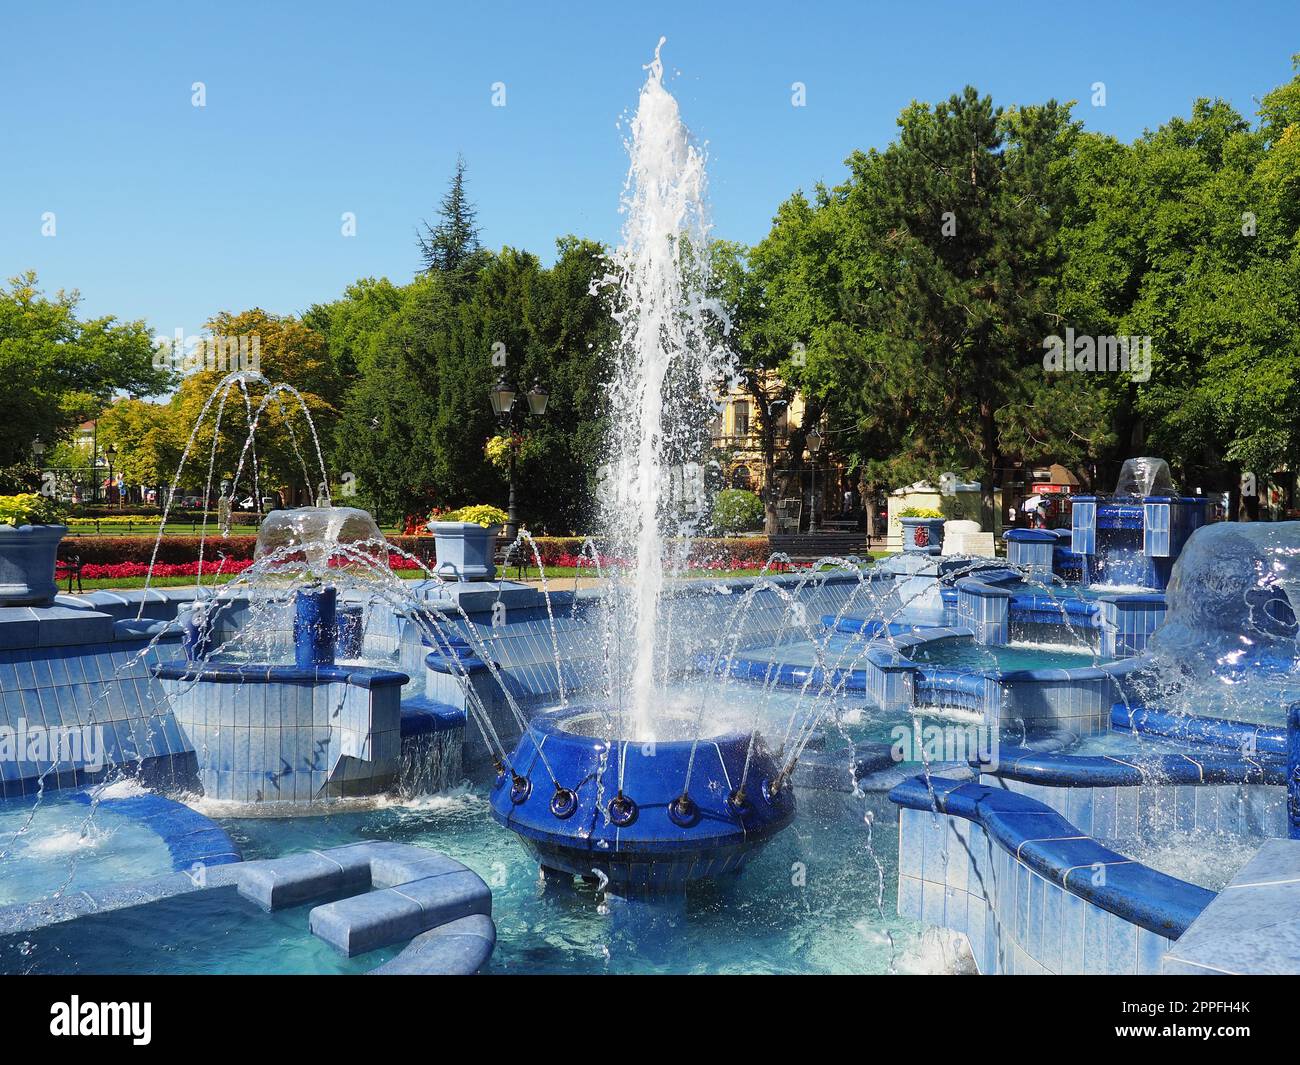 Subotica, Serbien 12. September 2021. Blauer Brunnen auf dem Platz neben dem Rathaus. Blaue Keramikteile mit Monogrammen. Ein funktionierender Brunnen mit Spritzwasser. Sommersonnentag am blauen Wasser Stockfoto